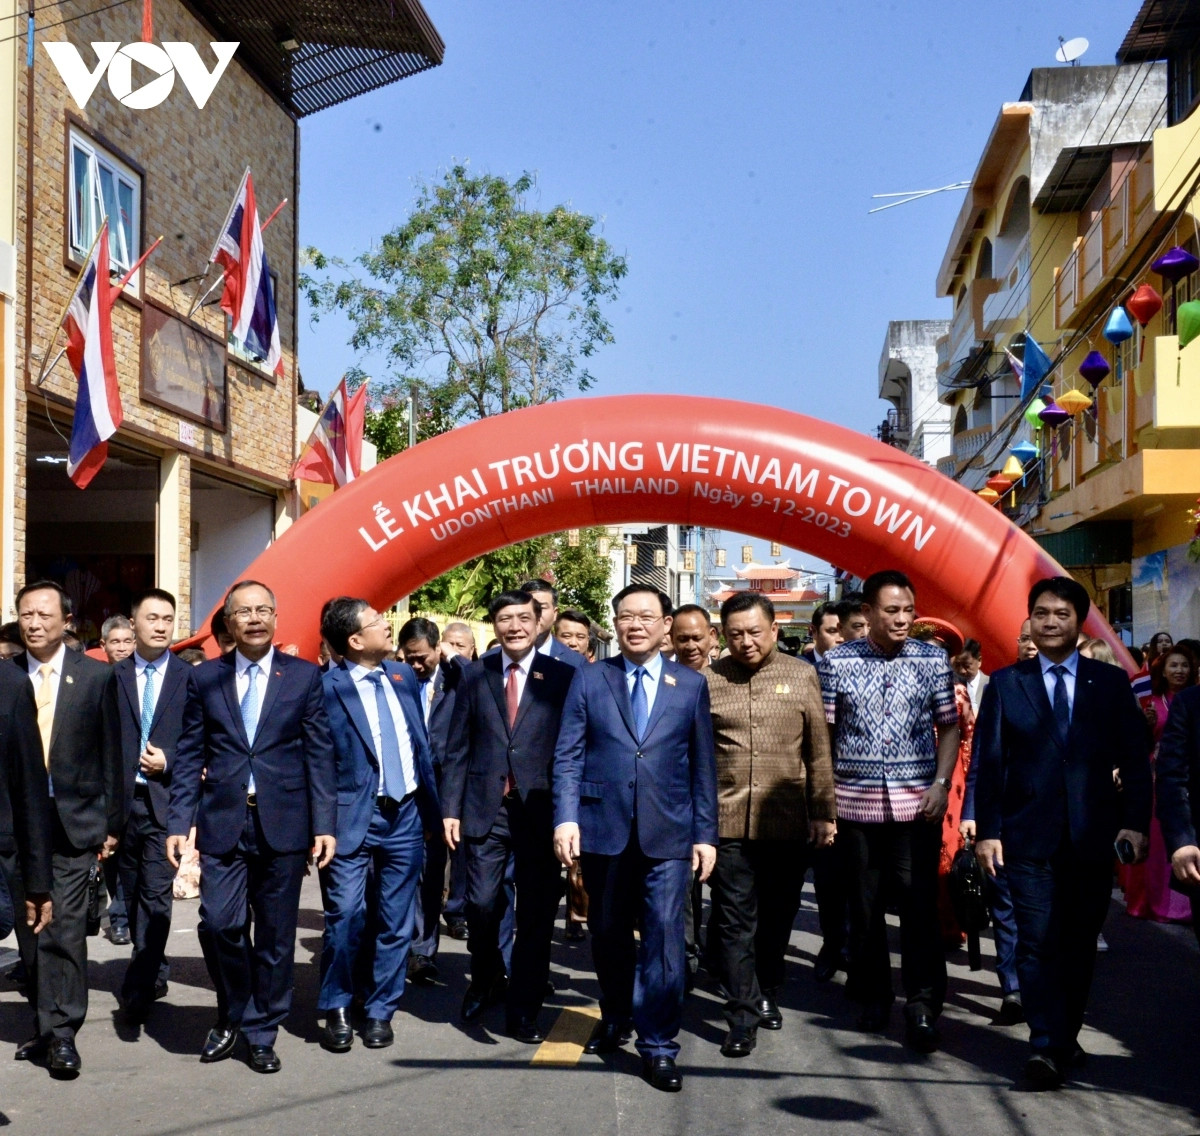 Chủ tịch Quốc hội dự lễ khai trương Phố Việt Nam tại tỉnh Udon Thani.